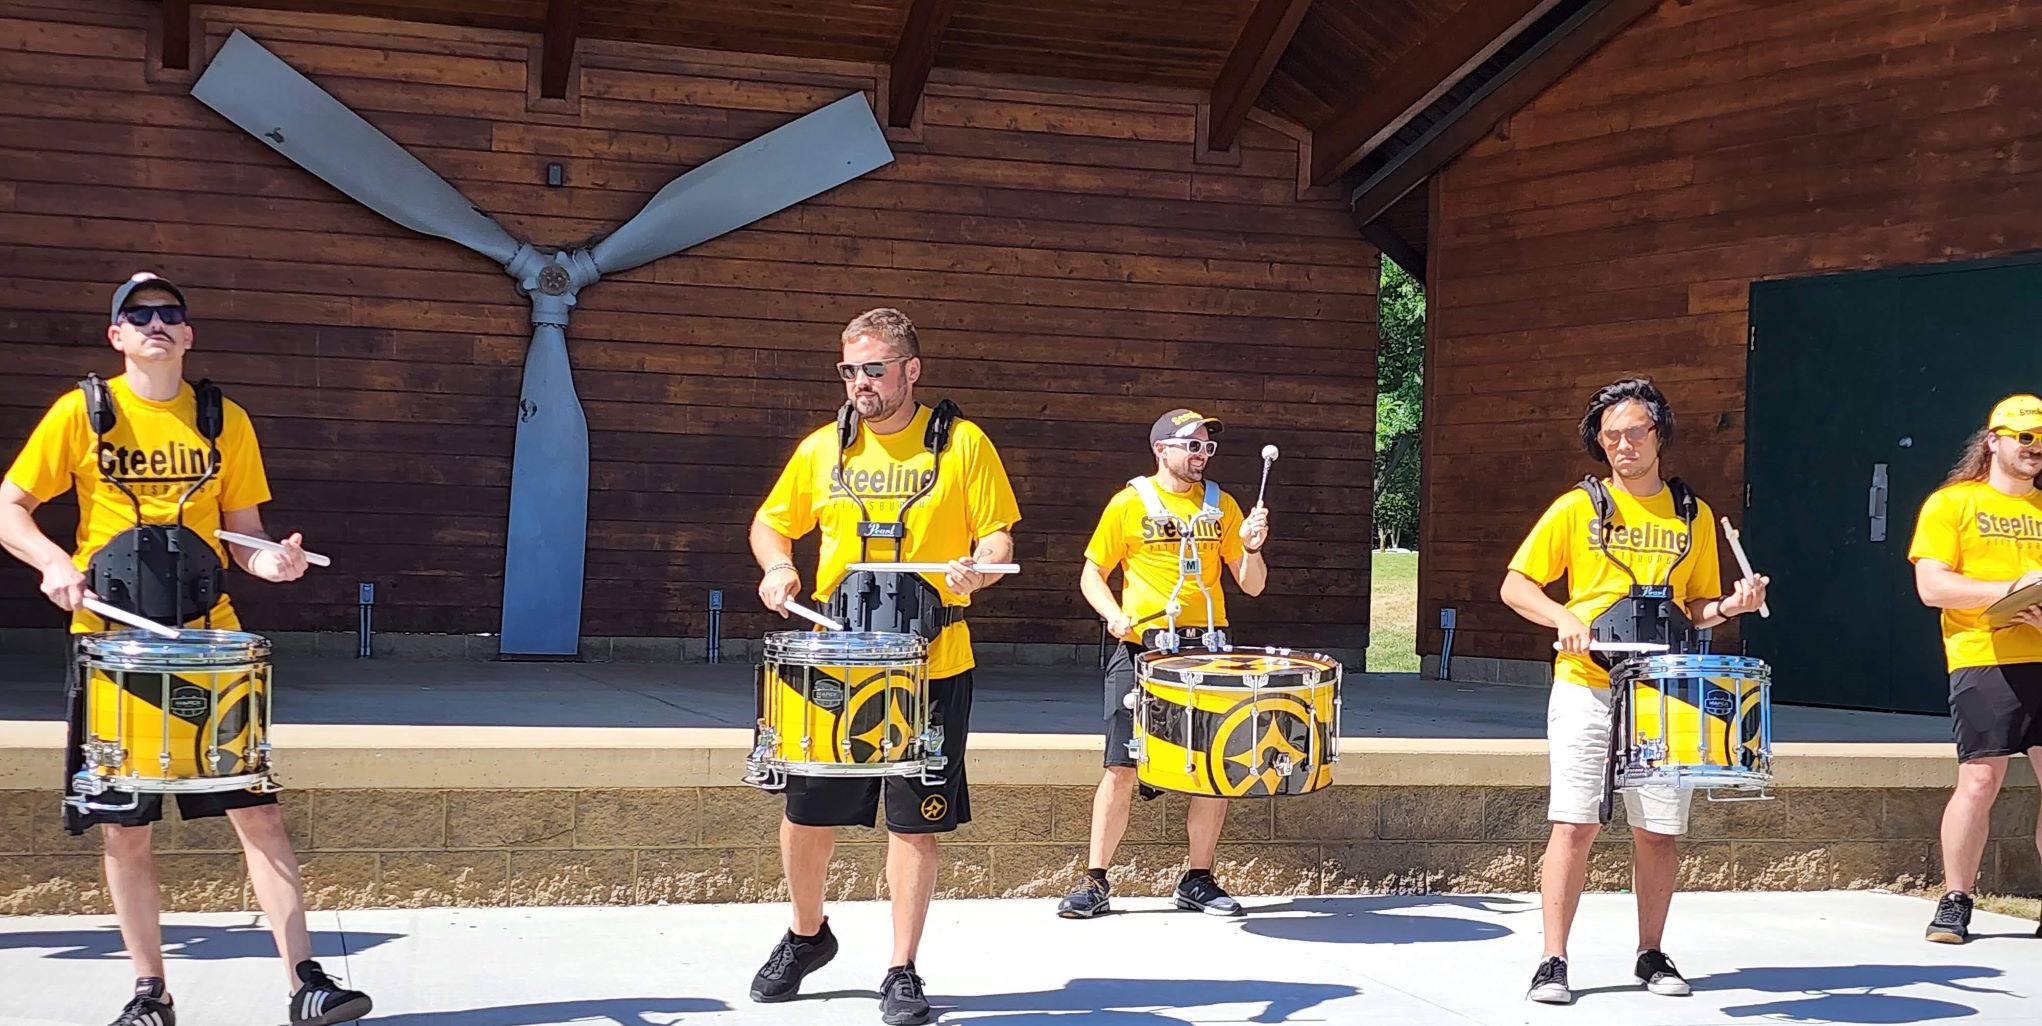 Pittsburgh Steelers drumline.